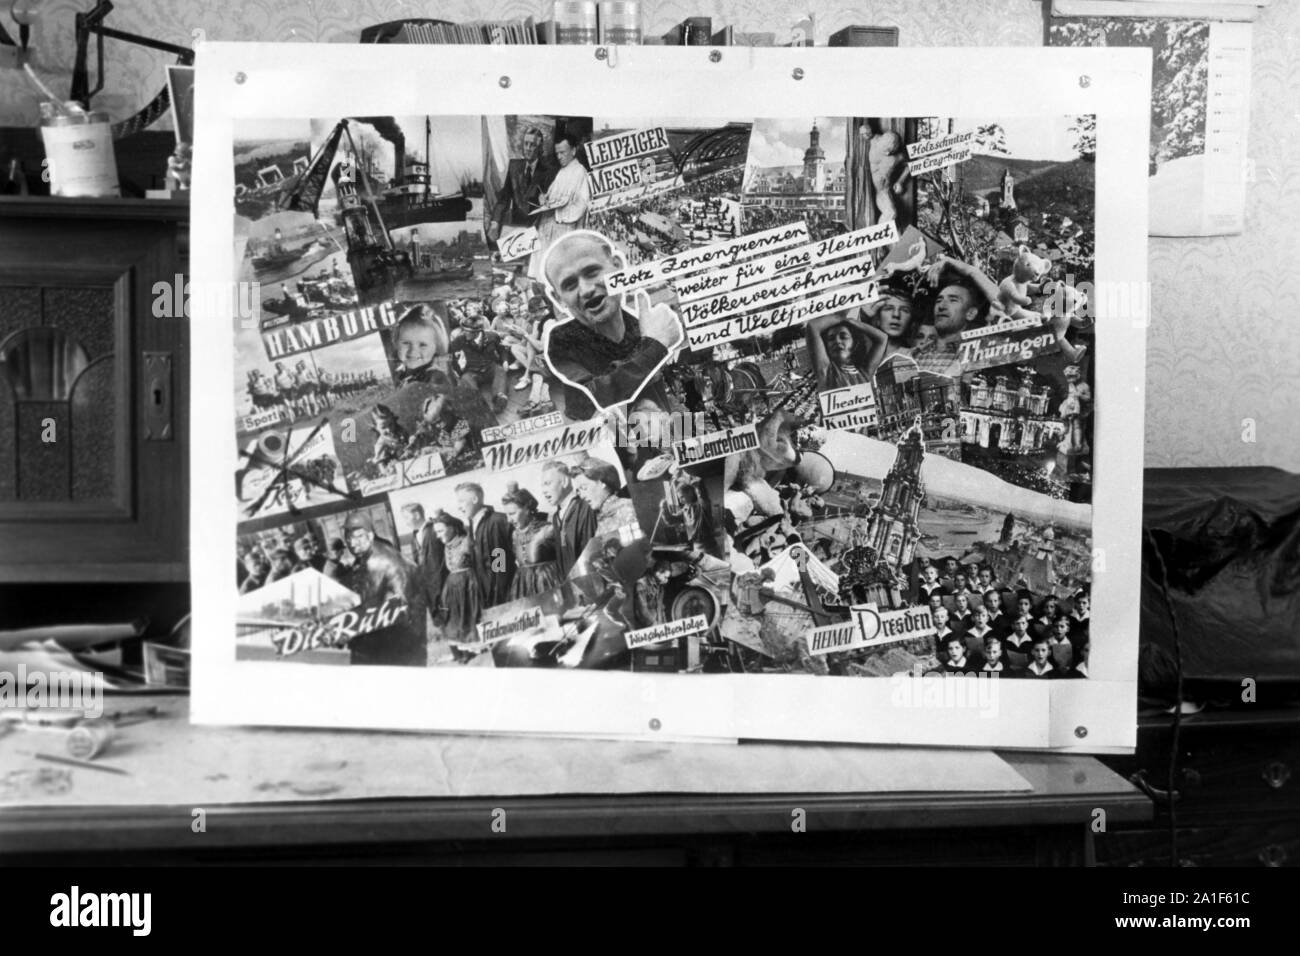 101-5337" Versöhnungsplakat'aus Photo Gallery von Erich Andres, Deutschland 1949. Fotomontage "Versöhnung" von Fotos geschossen und vom Fotografen Erich Andres, Deutschland 1949 komponiert. Stockfoto